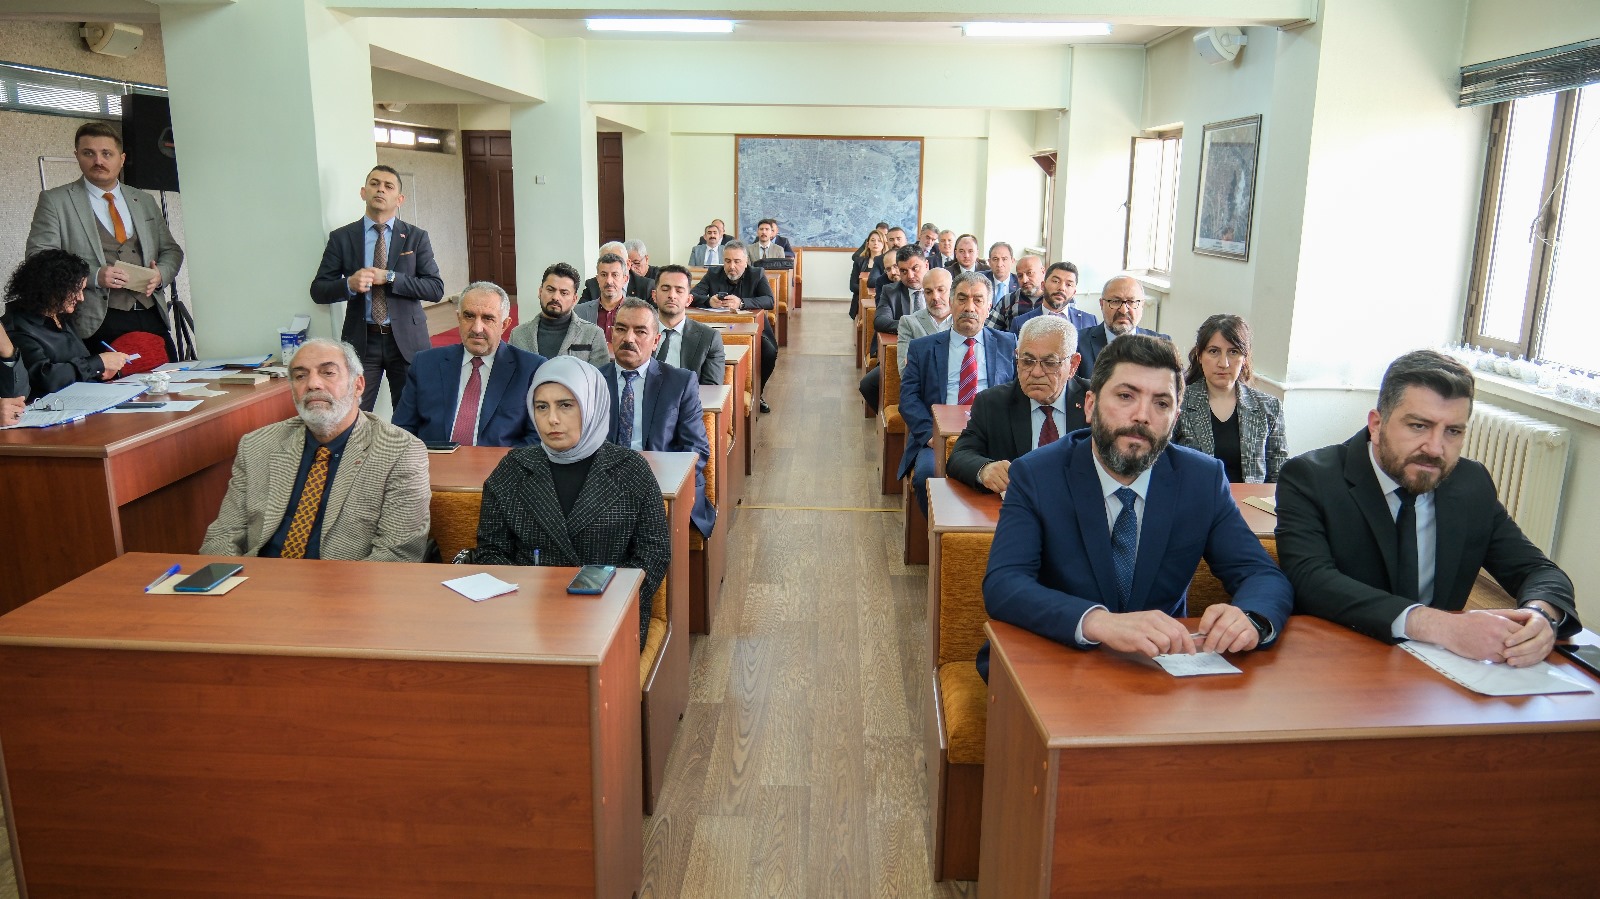 Erzincan Belediye Meclisinin ilk toplantısı yapıldı